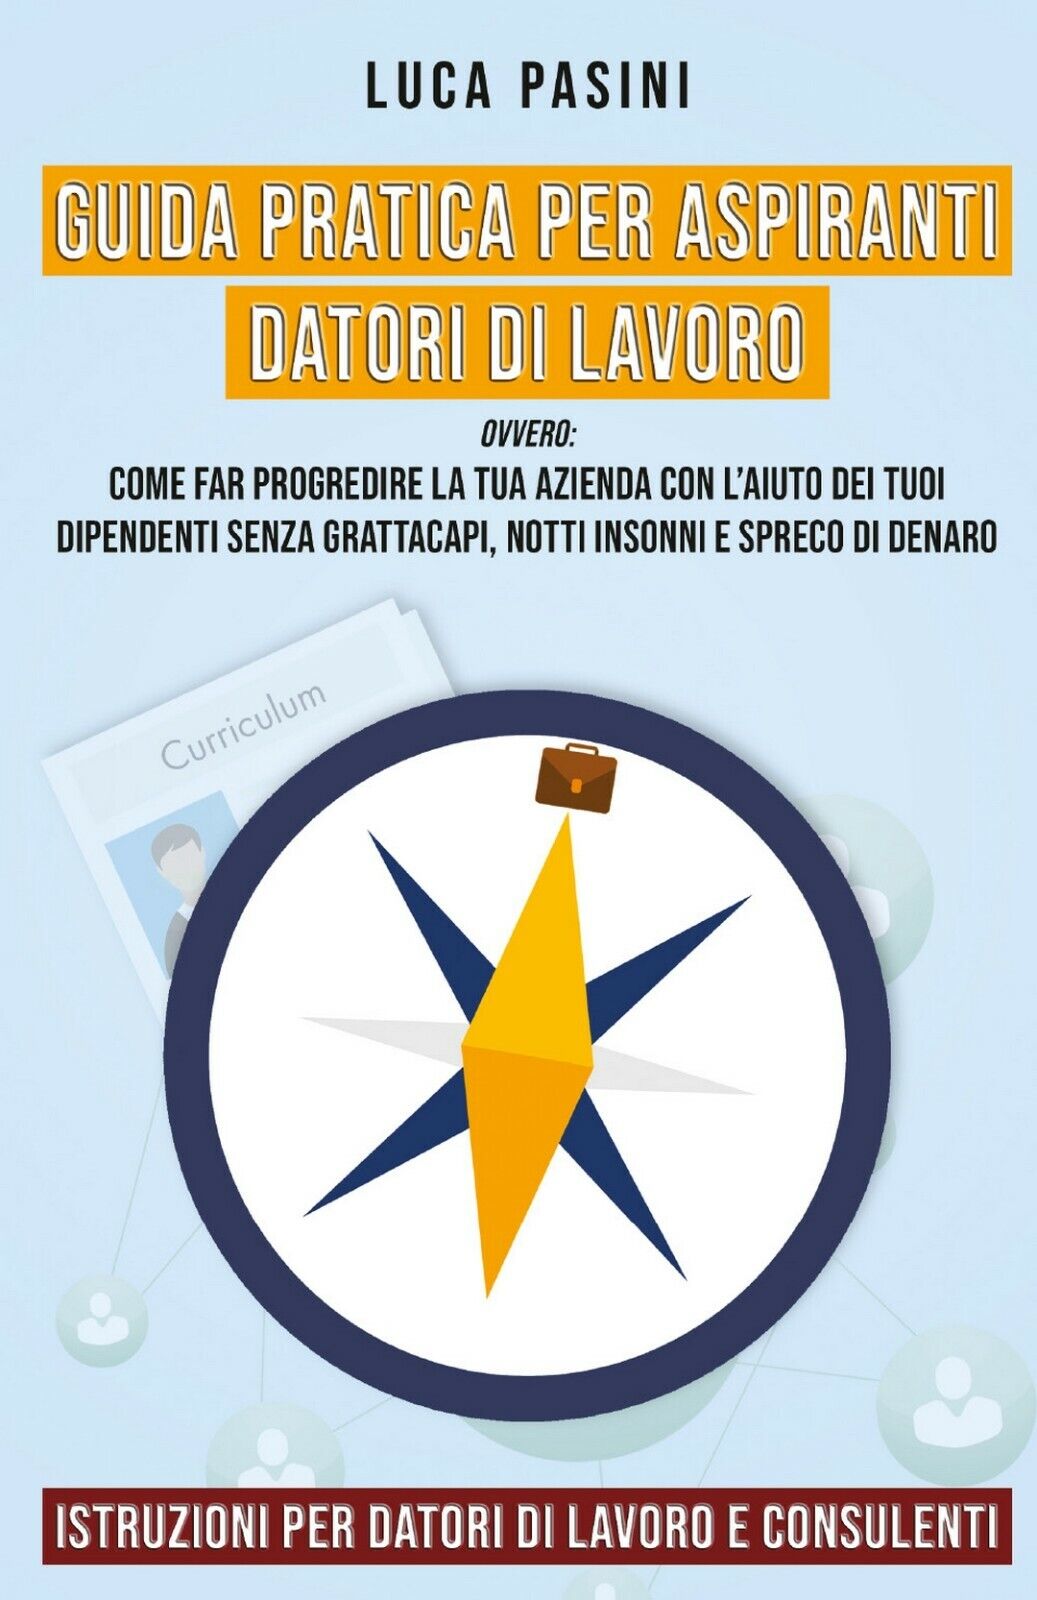 Guida Pratica per Aspiranti Datori di Lavoro, Luca Pasini,  2020,  Youcanprint